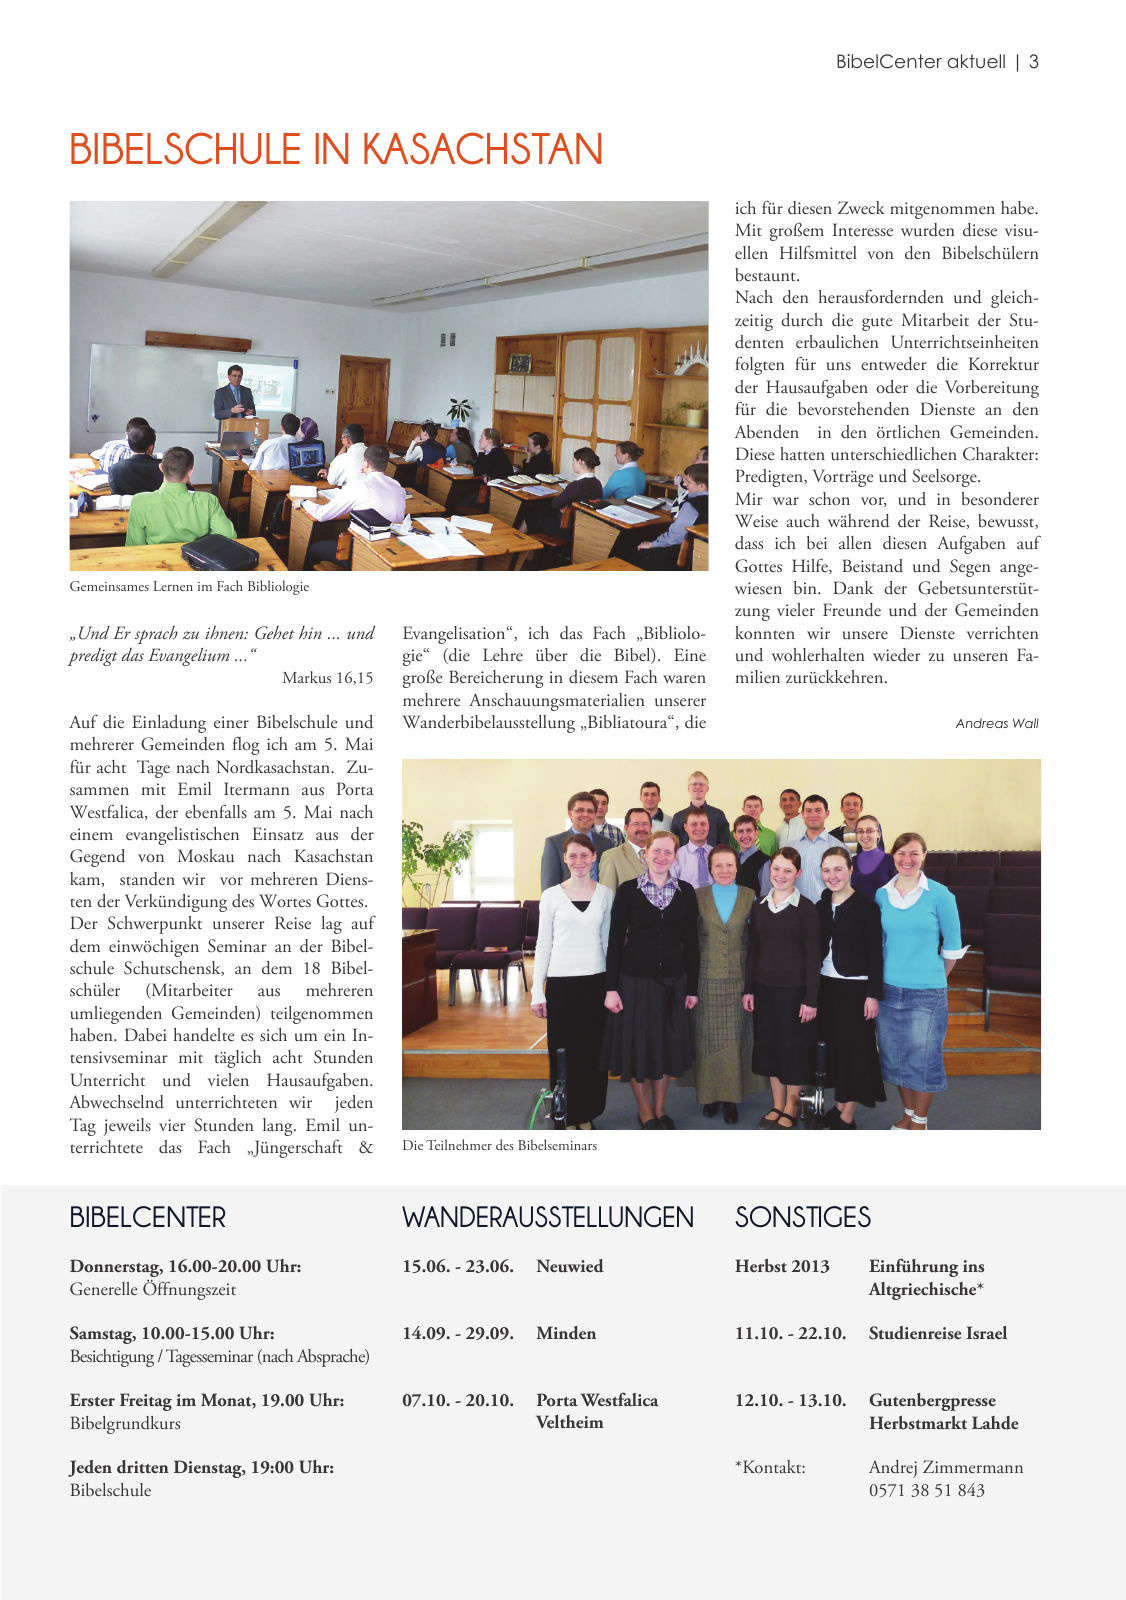 Vorschau BibelCenter aktuell 1 | 2013 Seite 3